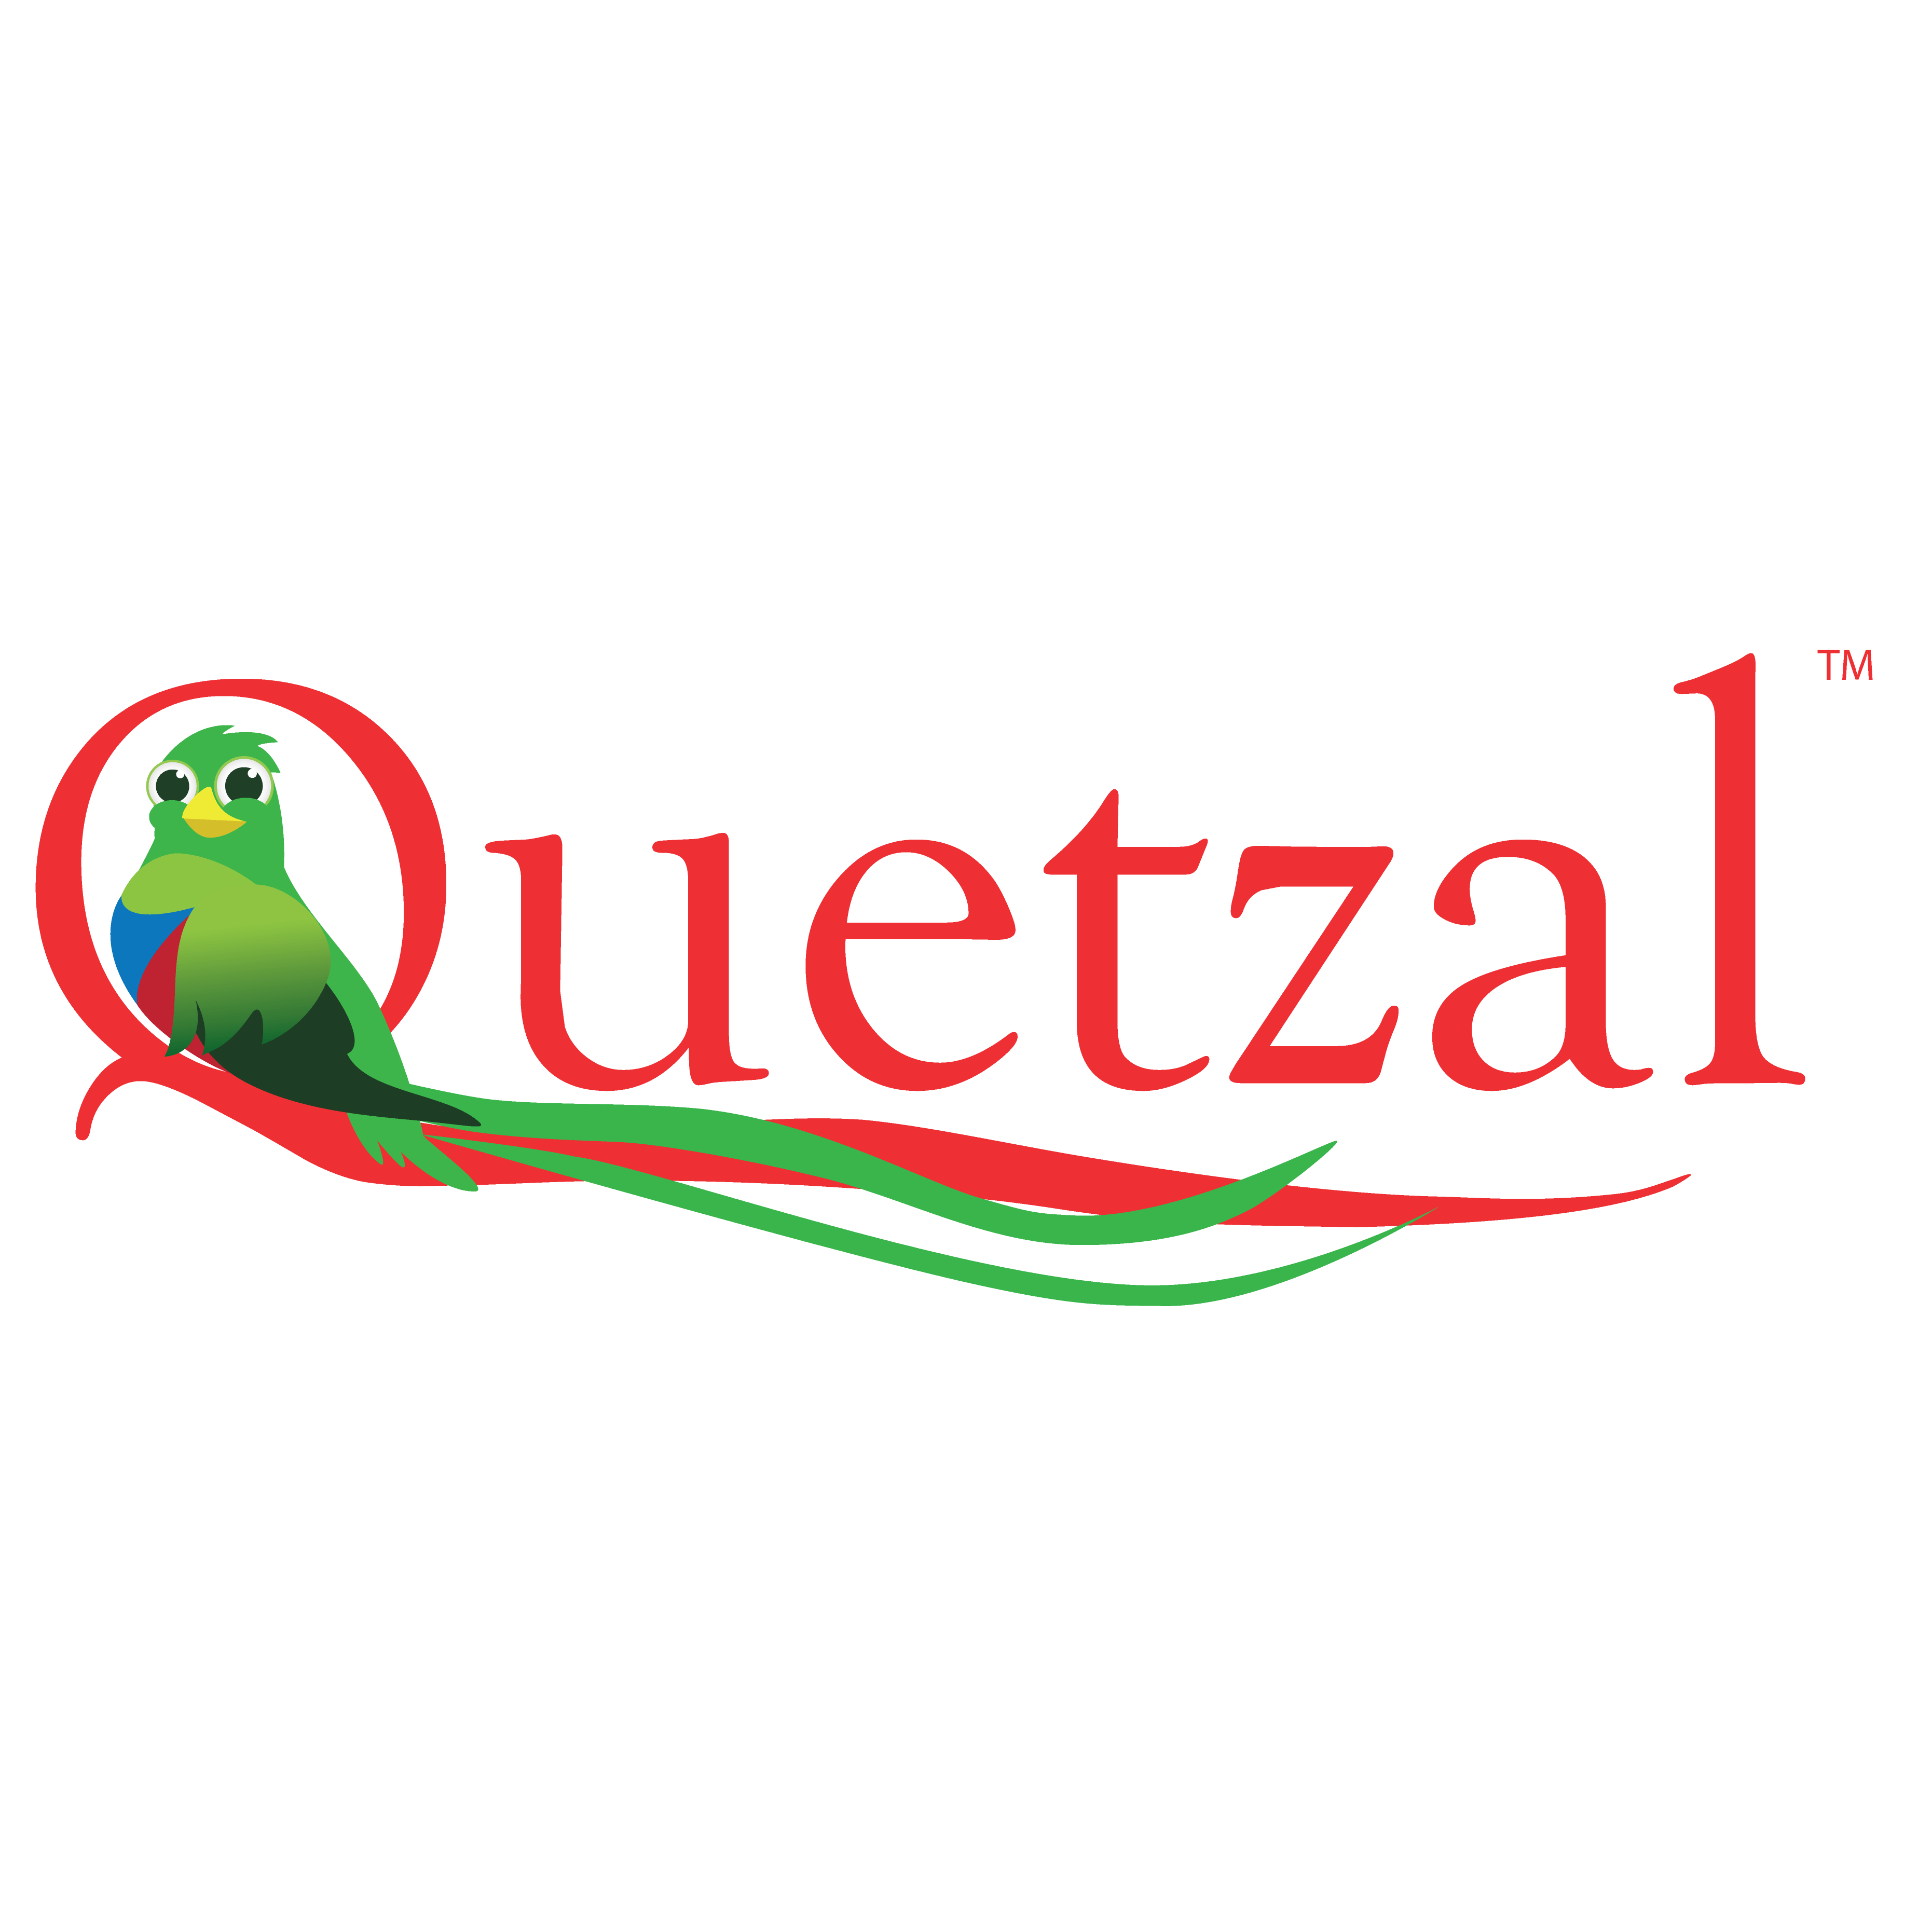 quetzal logo